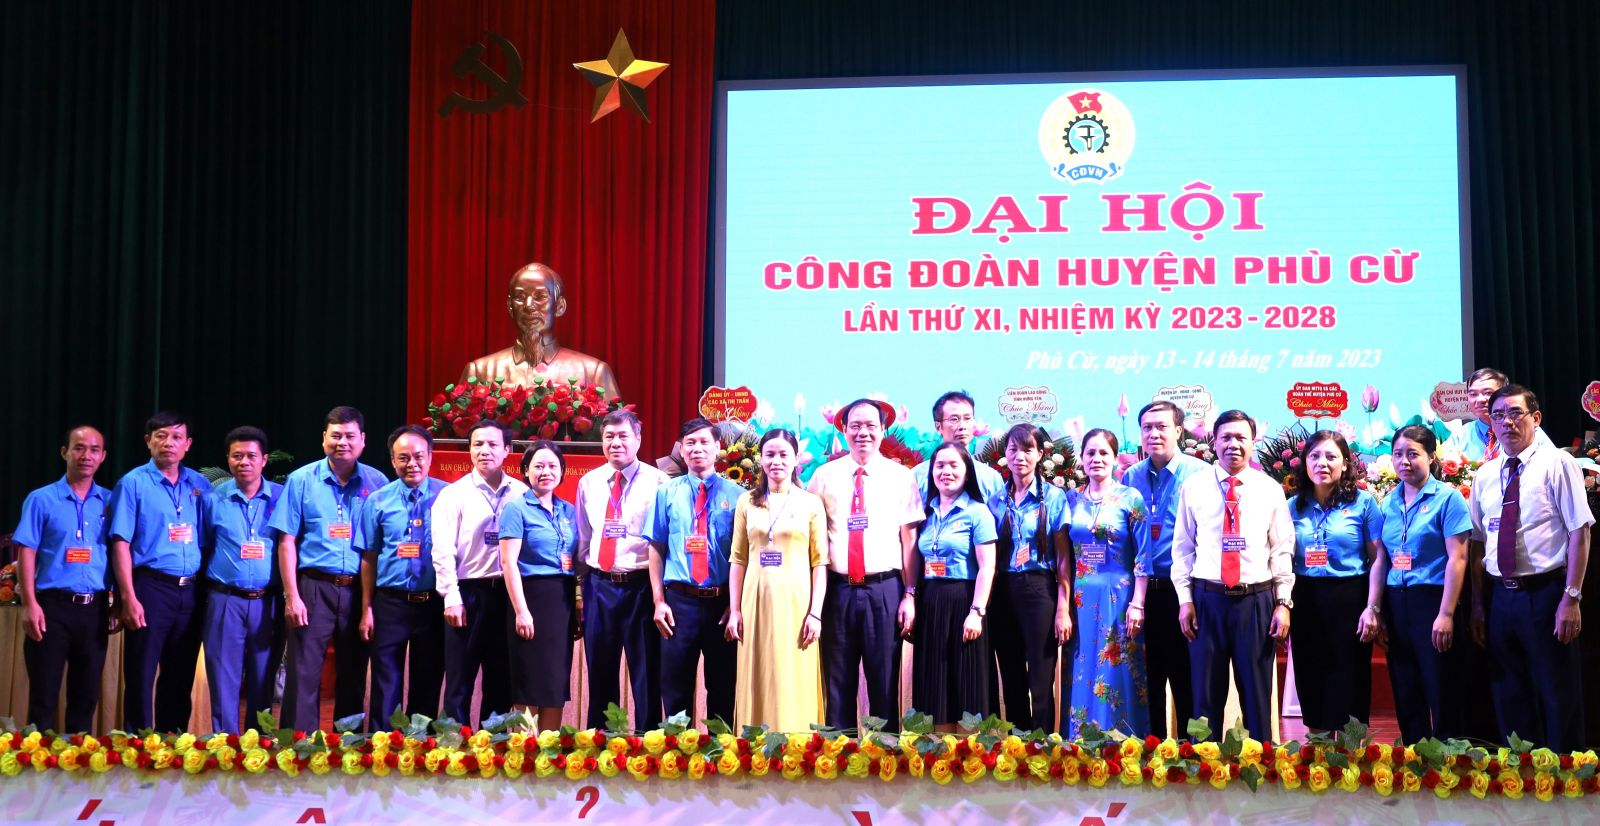 Đại hội Công đoàn huyện Phù Cừ lần thứ XI, nhiệm kỳ 2023-2028